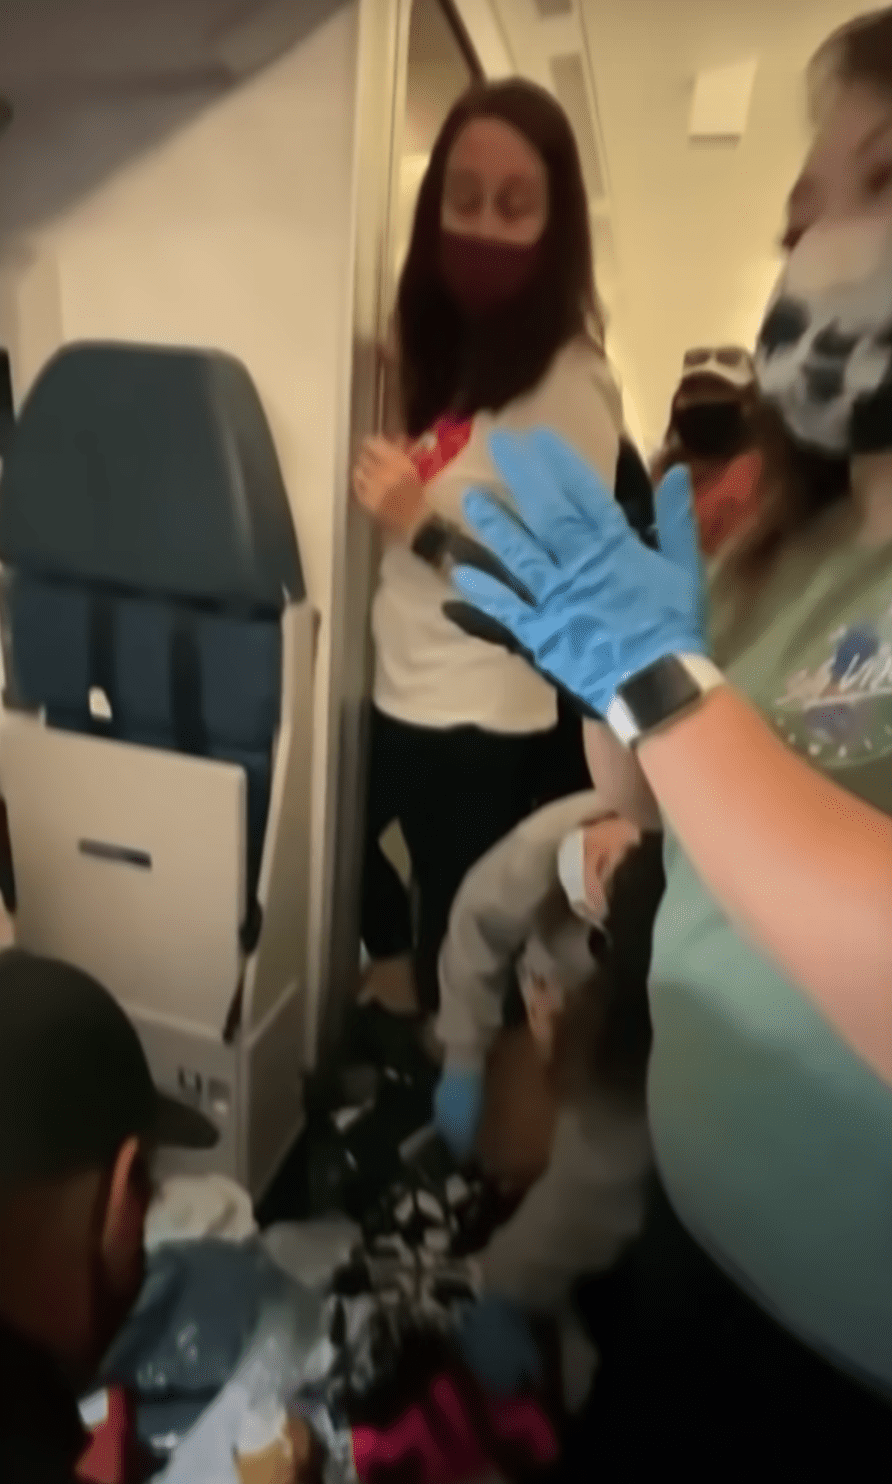 Krankenschwestern und Ärzte helfen einer Frau, die mitten im Flug entbunden hat. | Quelle: Youtube.com/TheEllenShow